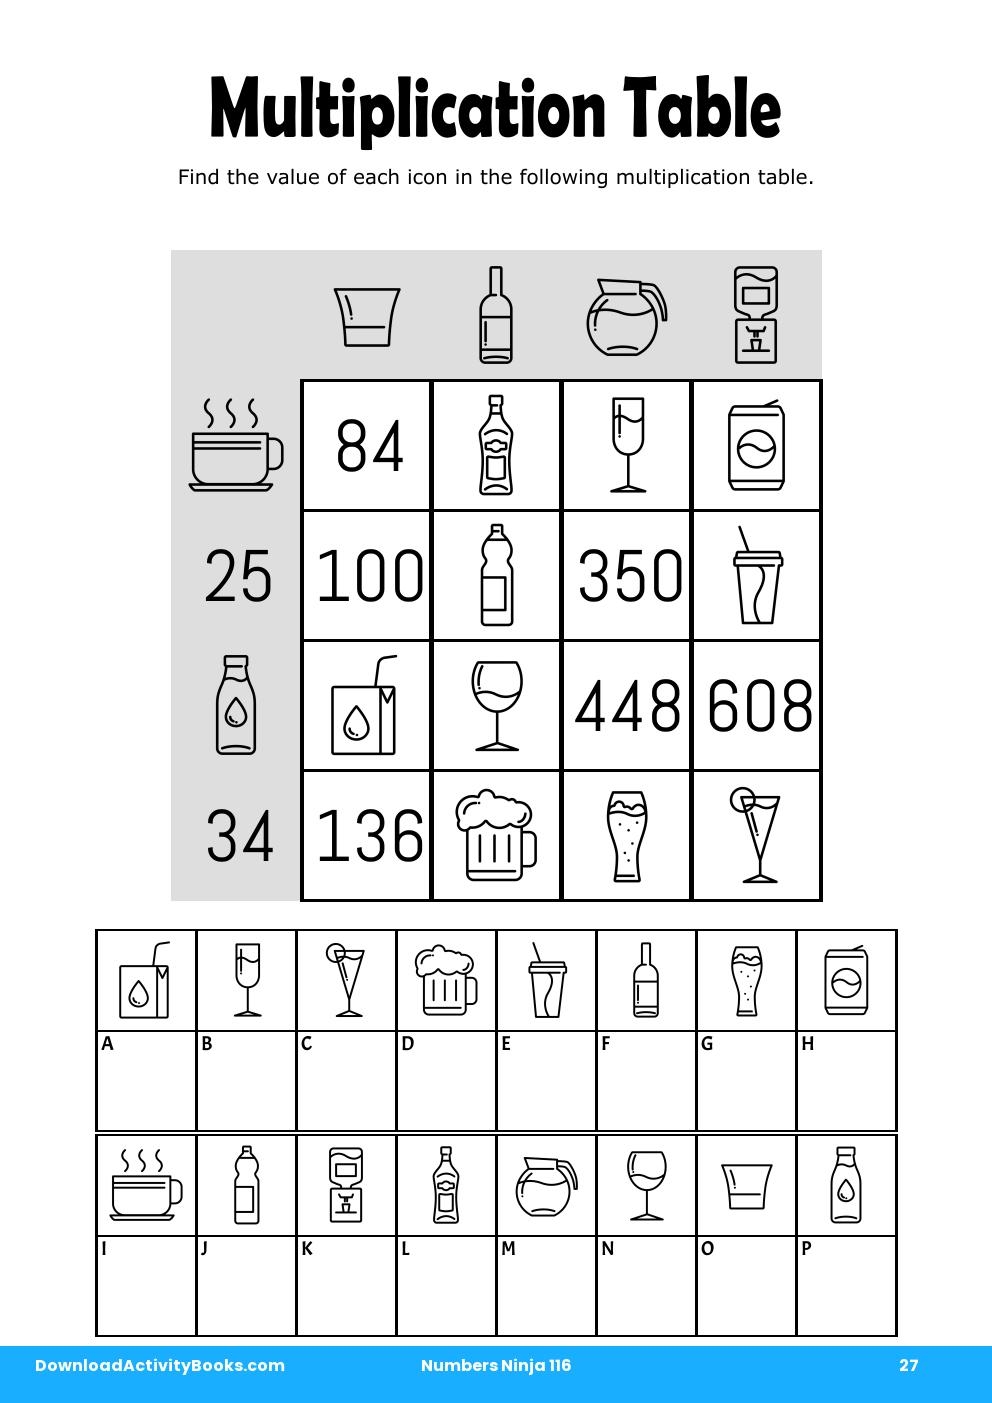 Multiplication Table in Numbers Ninja 116